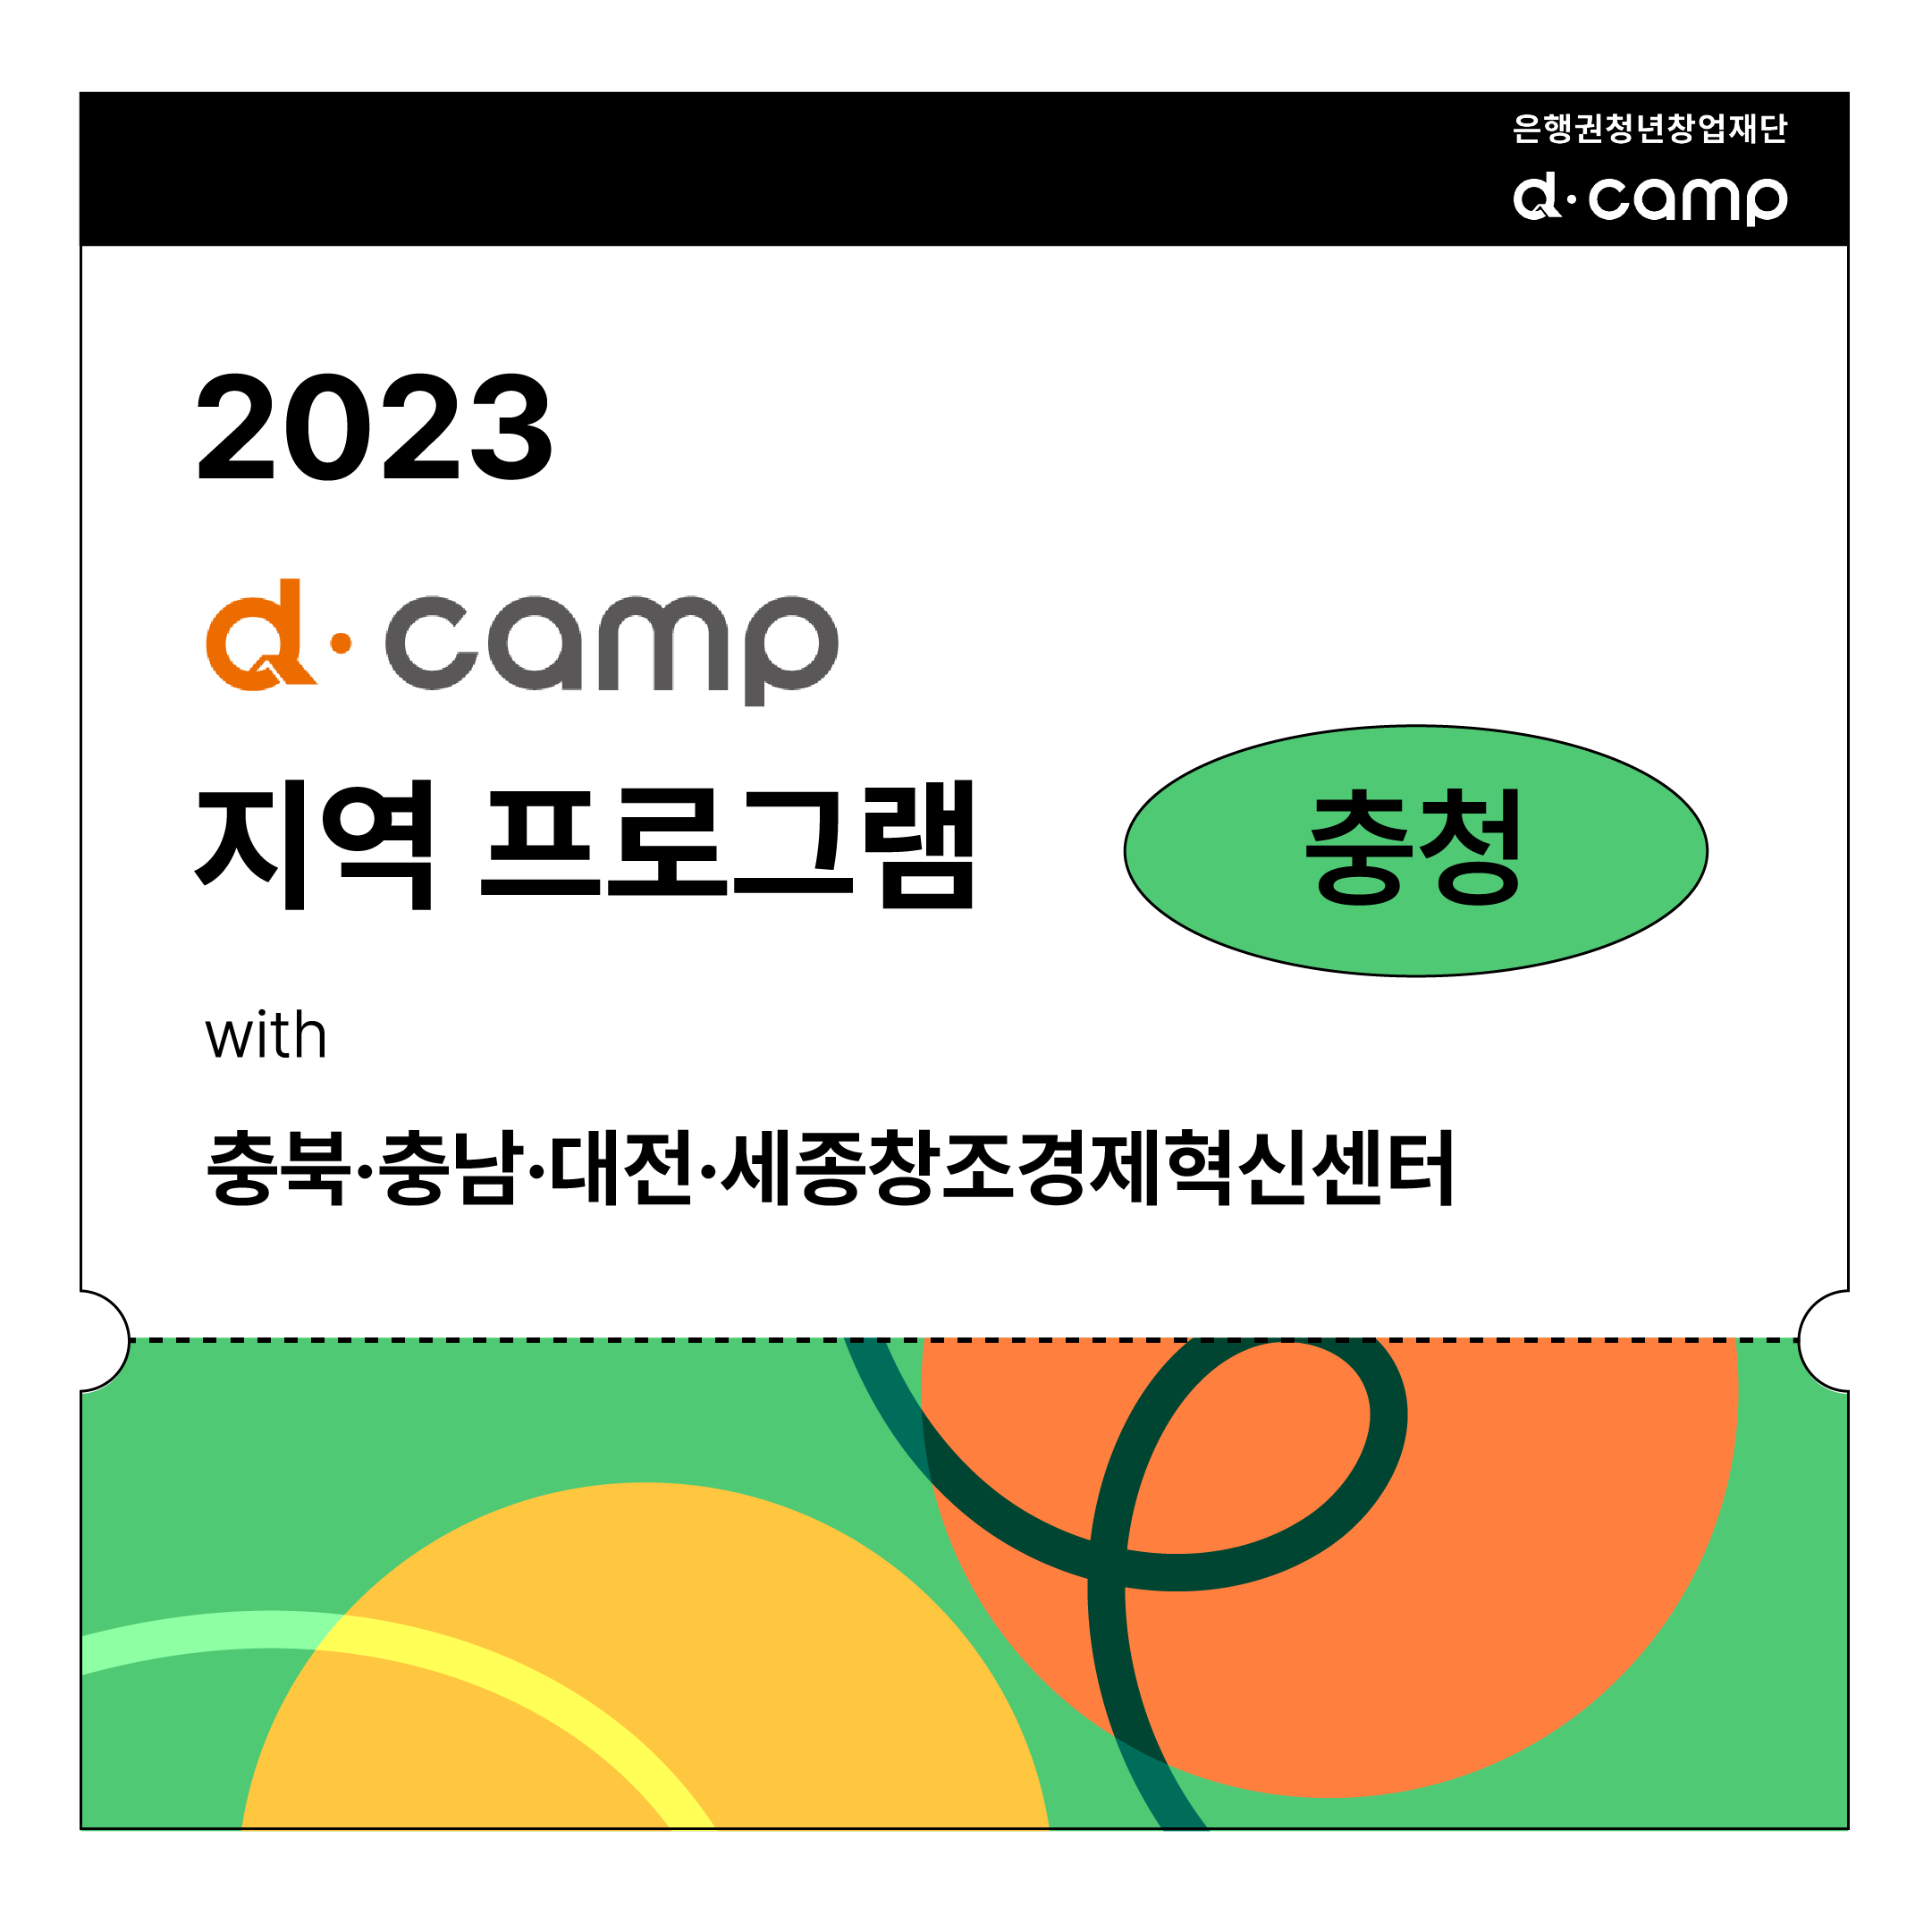 2023년, d·camp와 충청에서 만날 스타트업을 찾아유~ (조기마감) 의 웹포스터